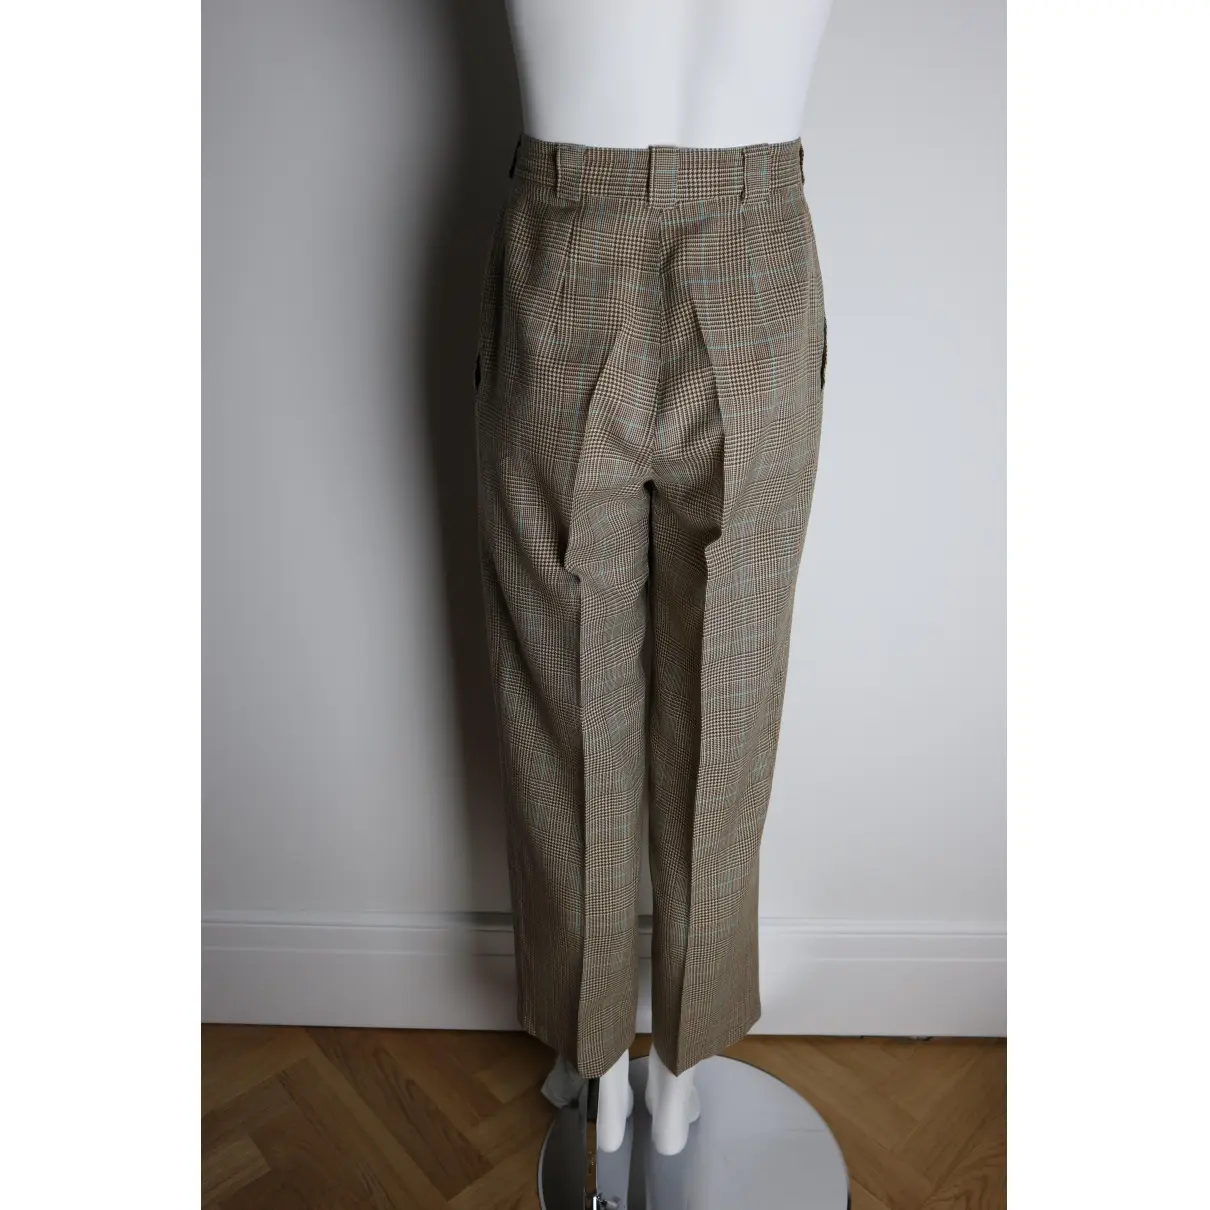 Buy Laurel Wool carot pants online - Vintage